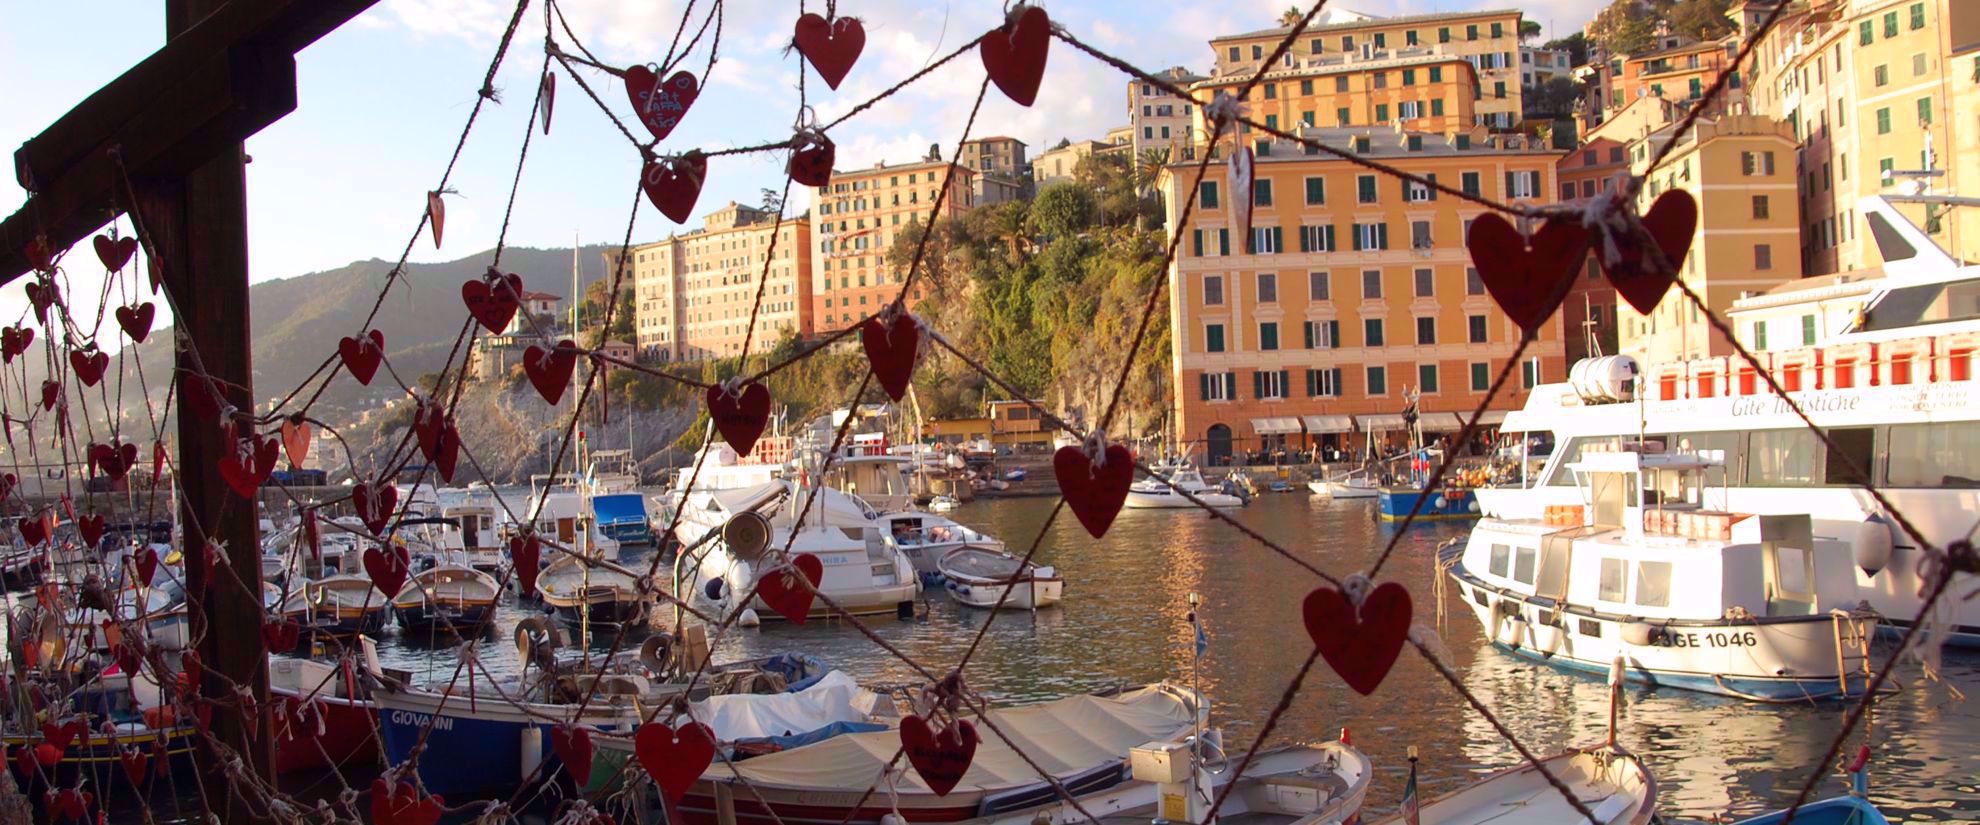 Hearts on fence on italian riviera